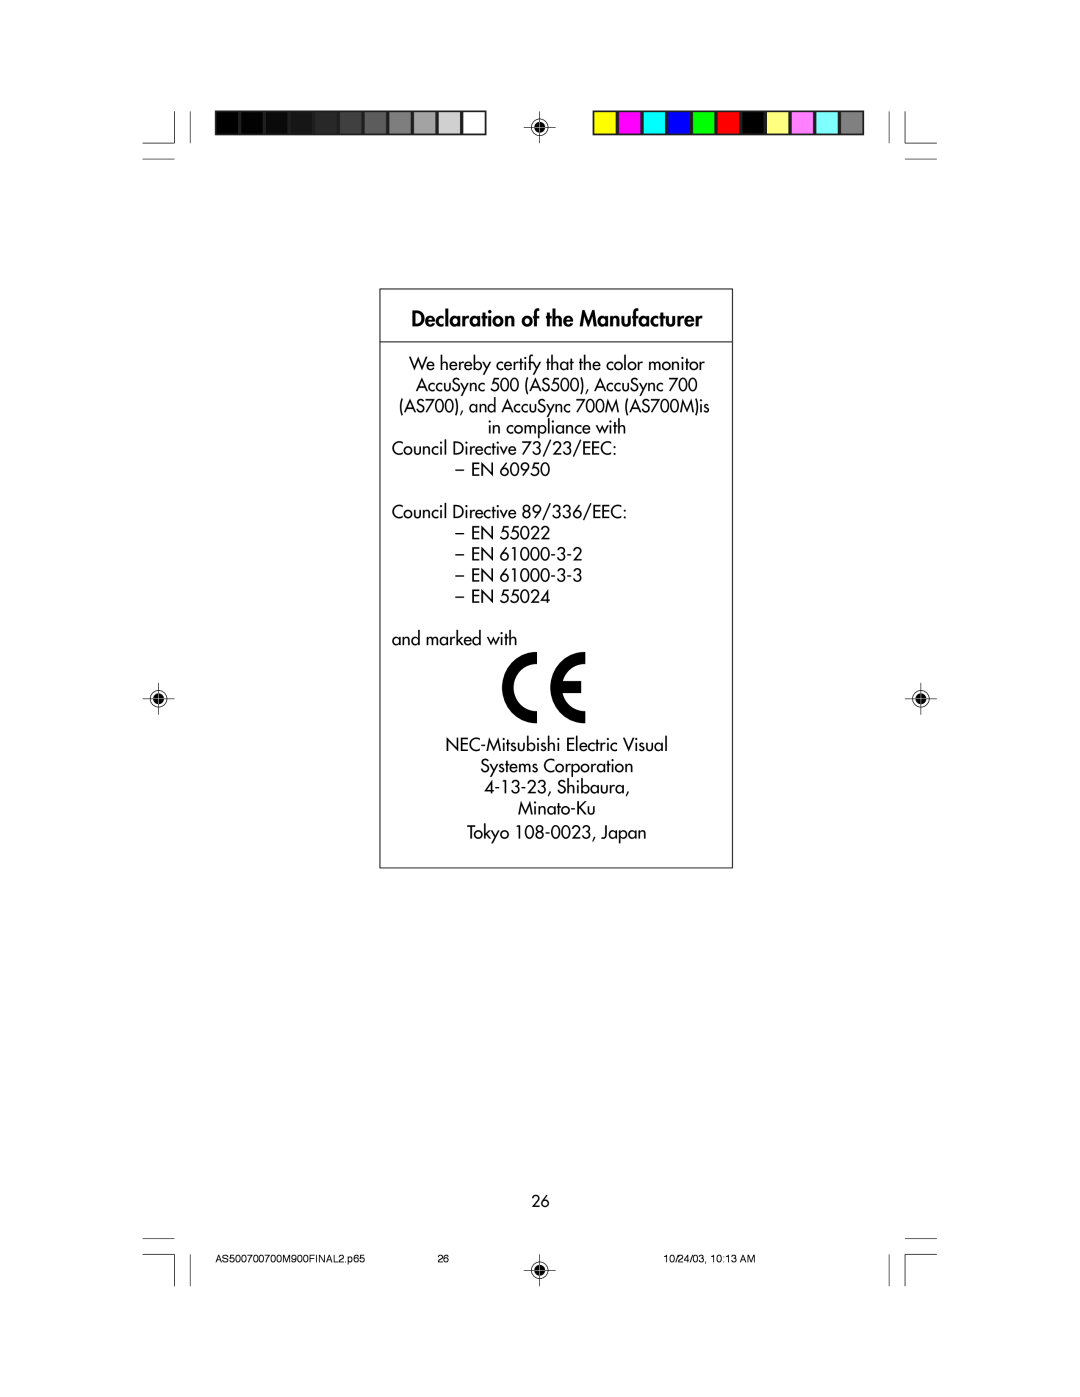 NEC 700, 900, 500 manual Declaration of the Manufacturer, Council Directive 73/23/EEC Ð EN Council Directive 89/336/EEC Ð EN 